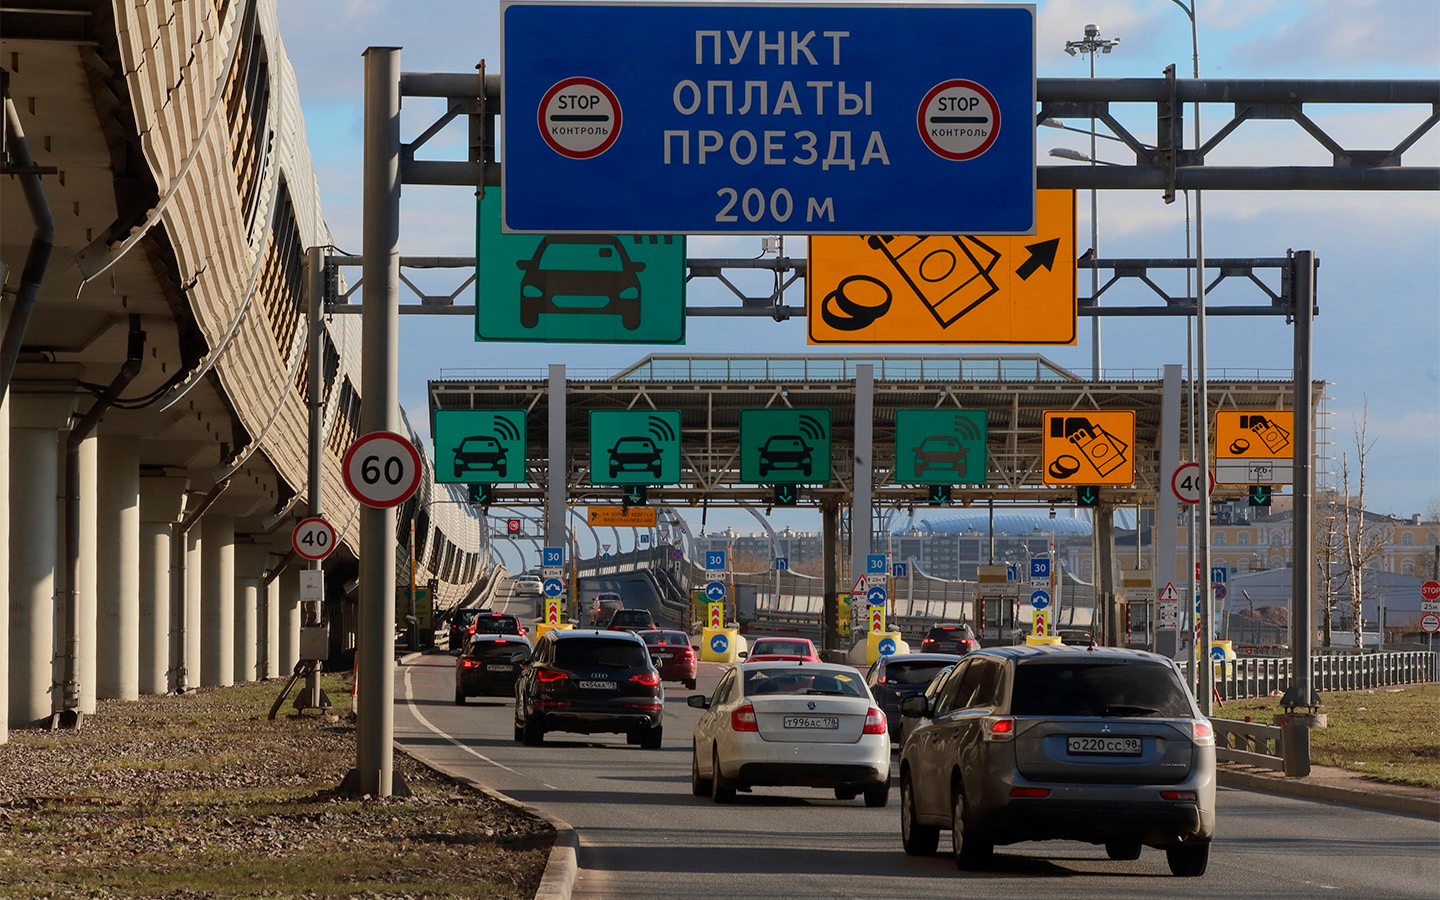 Сколько стоит использование транспондера zsd для проезда по платной дороге от Питера до Москвы?